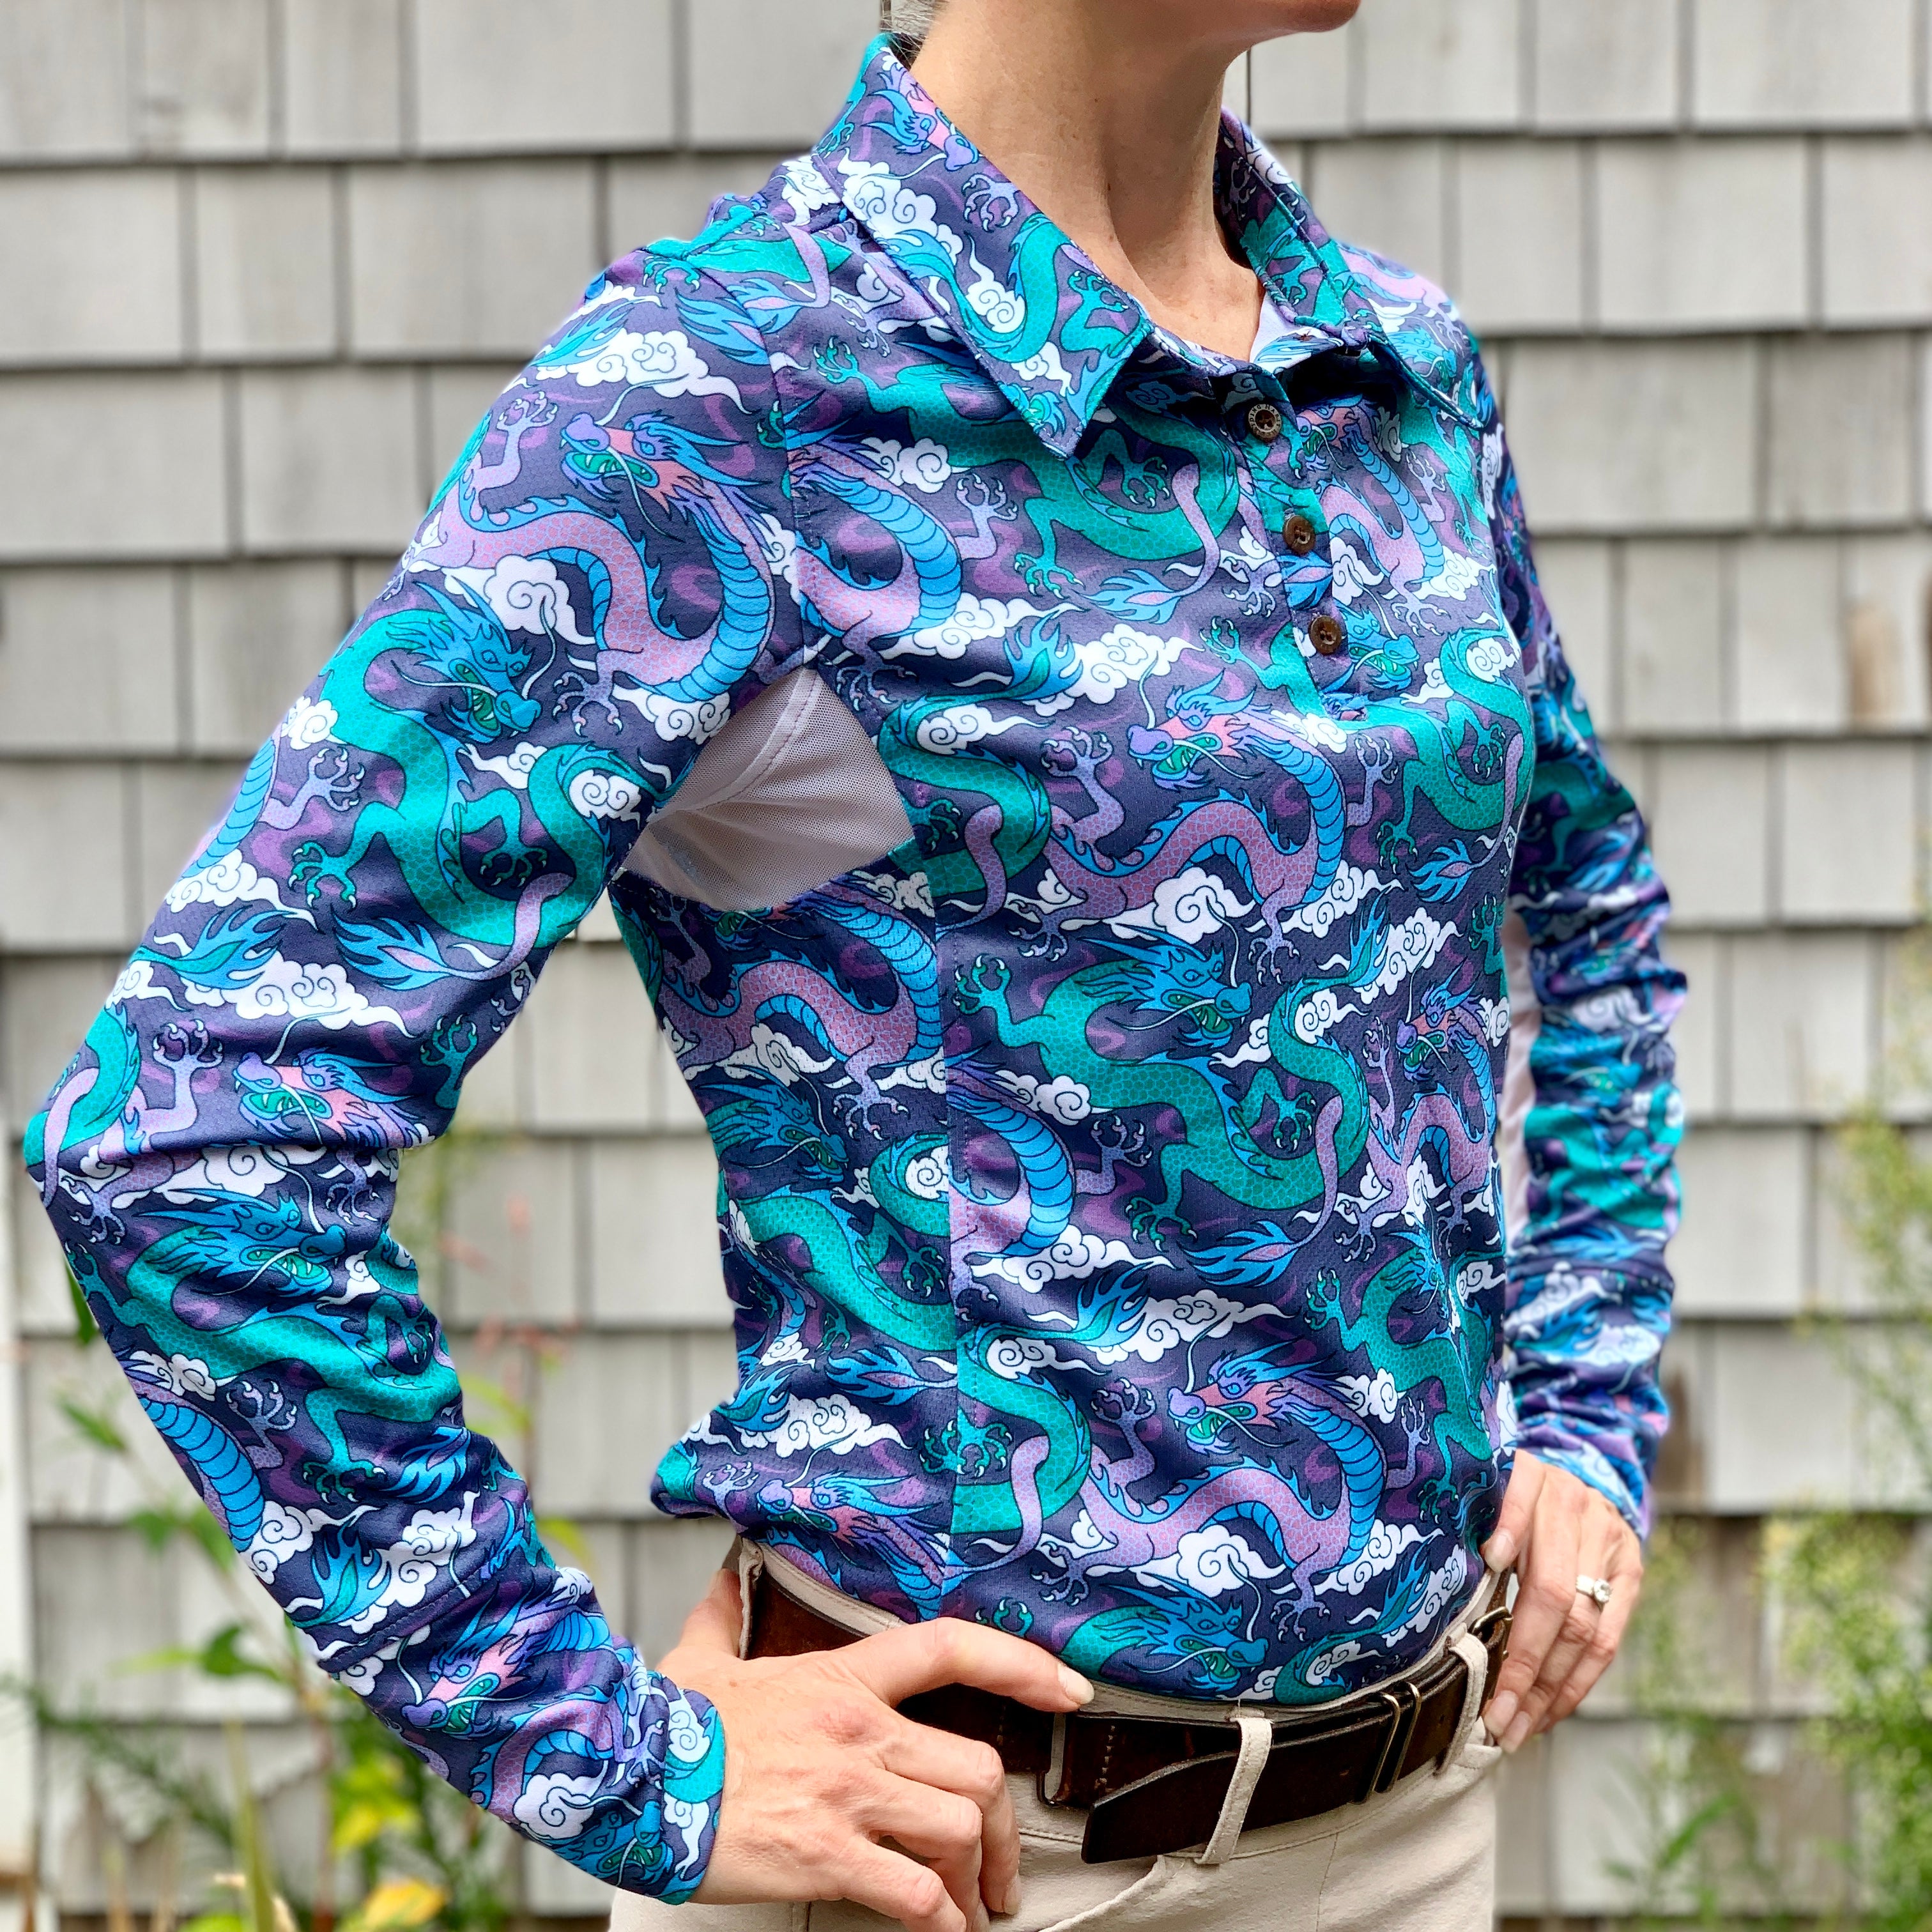 Equestrian Clothing - Sun Shirts for Women - Polo Shirts for Women – Her  Riding Habit